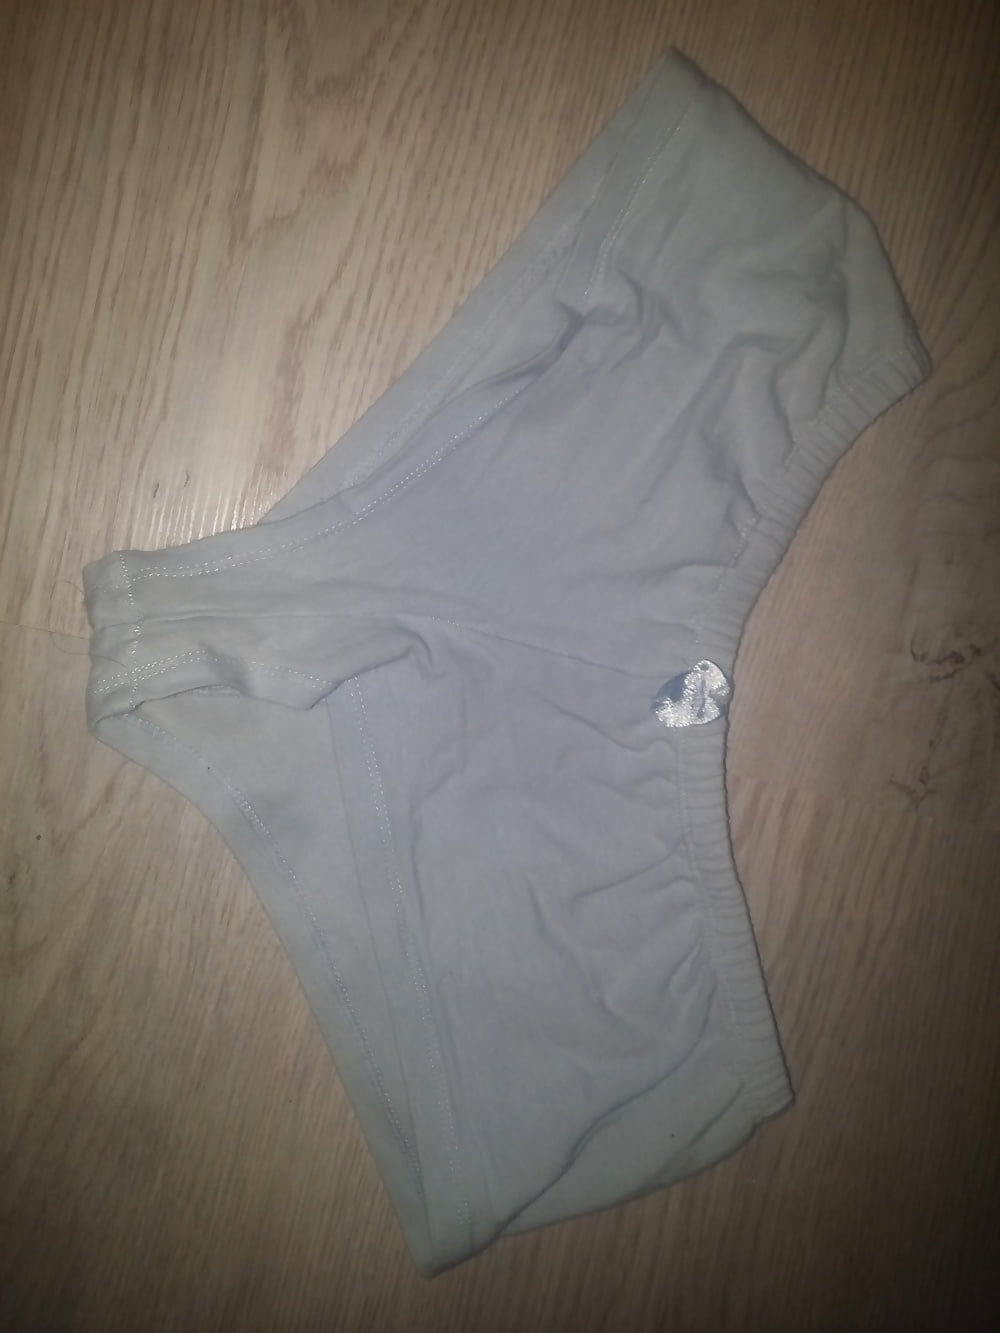 My mom stolen panties and bra (16/19)